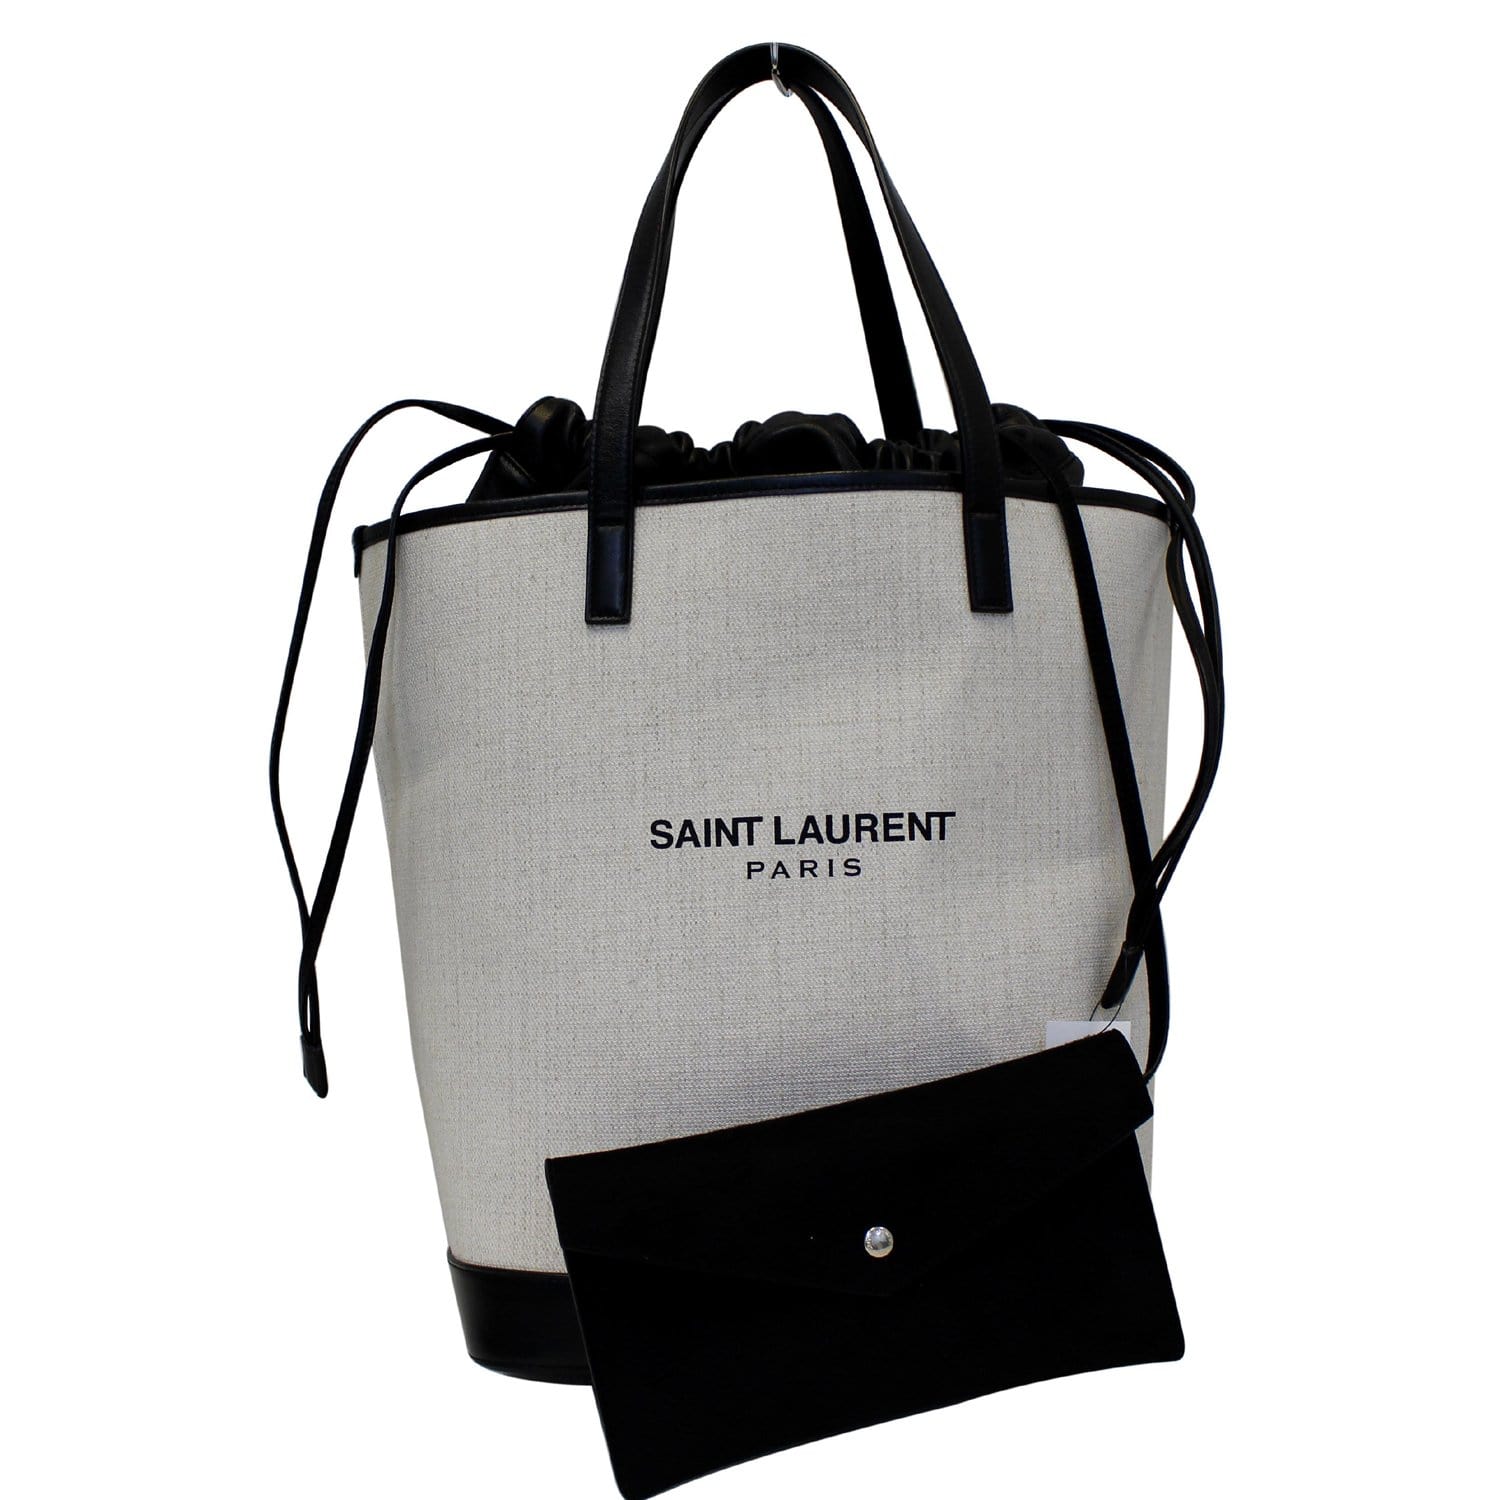 YSL Yves Saint Laurent Paris Dust Bag Black White Cotton Lining 